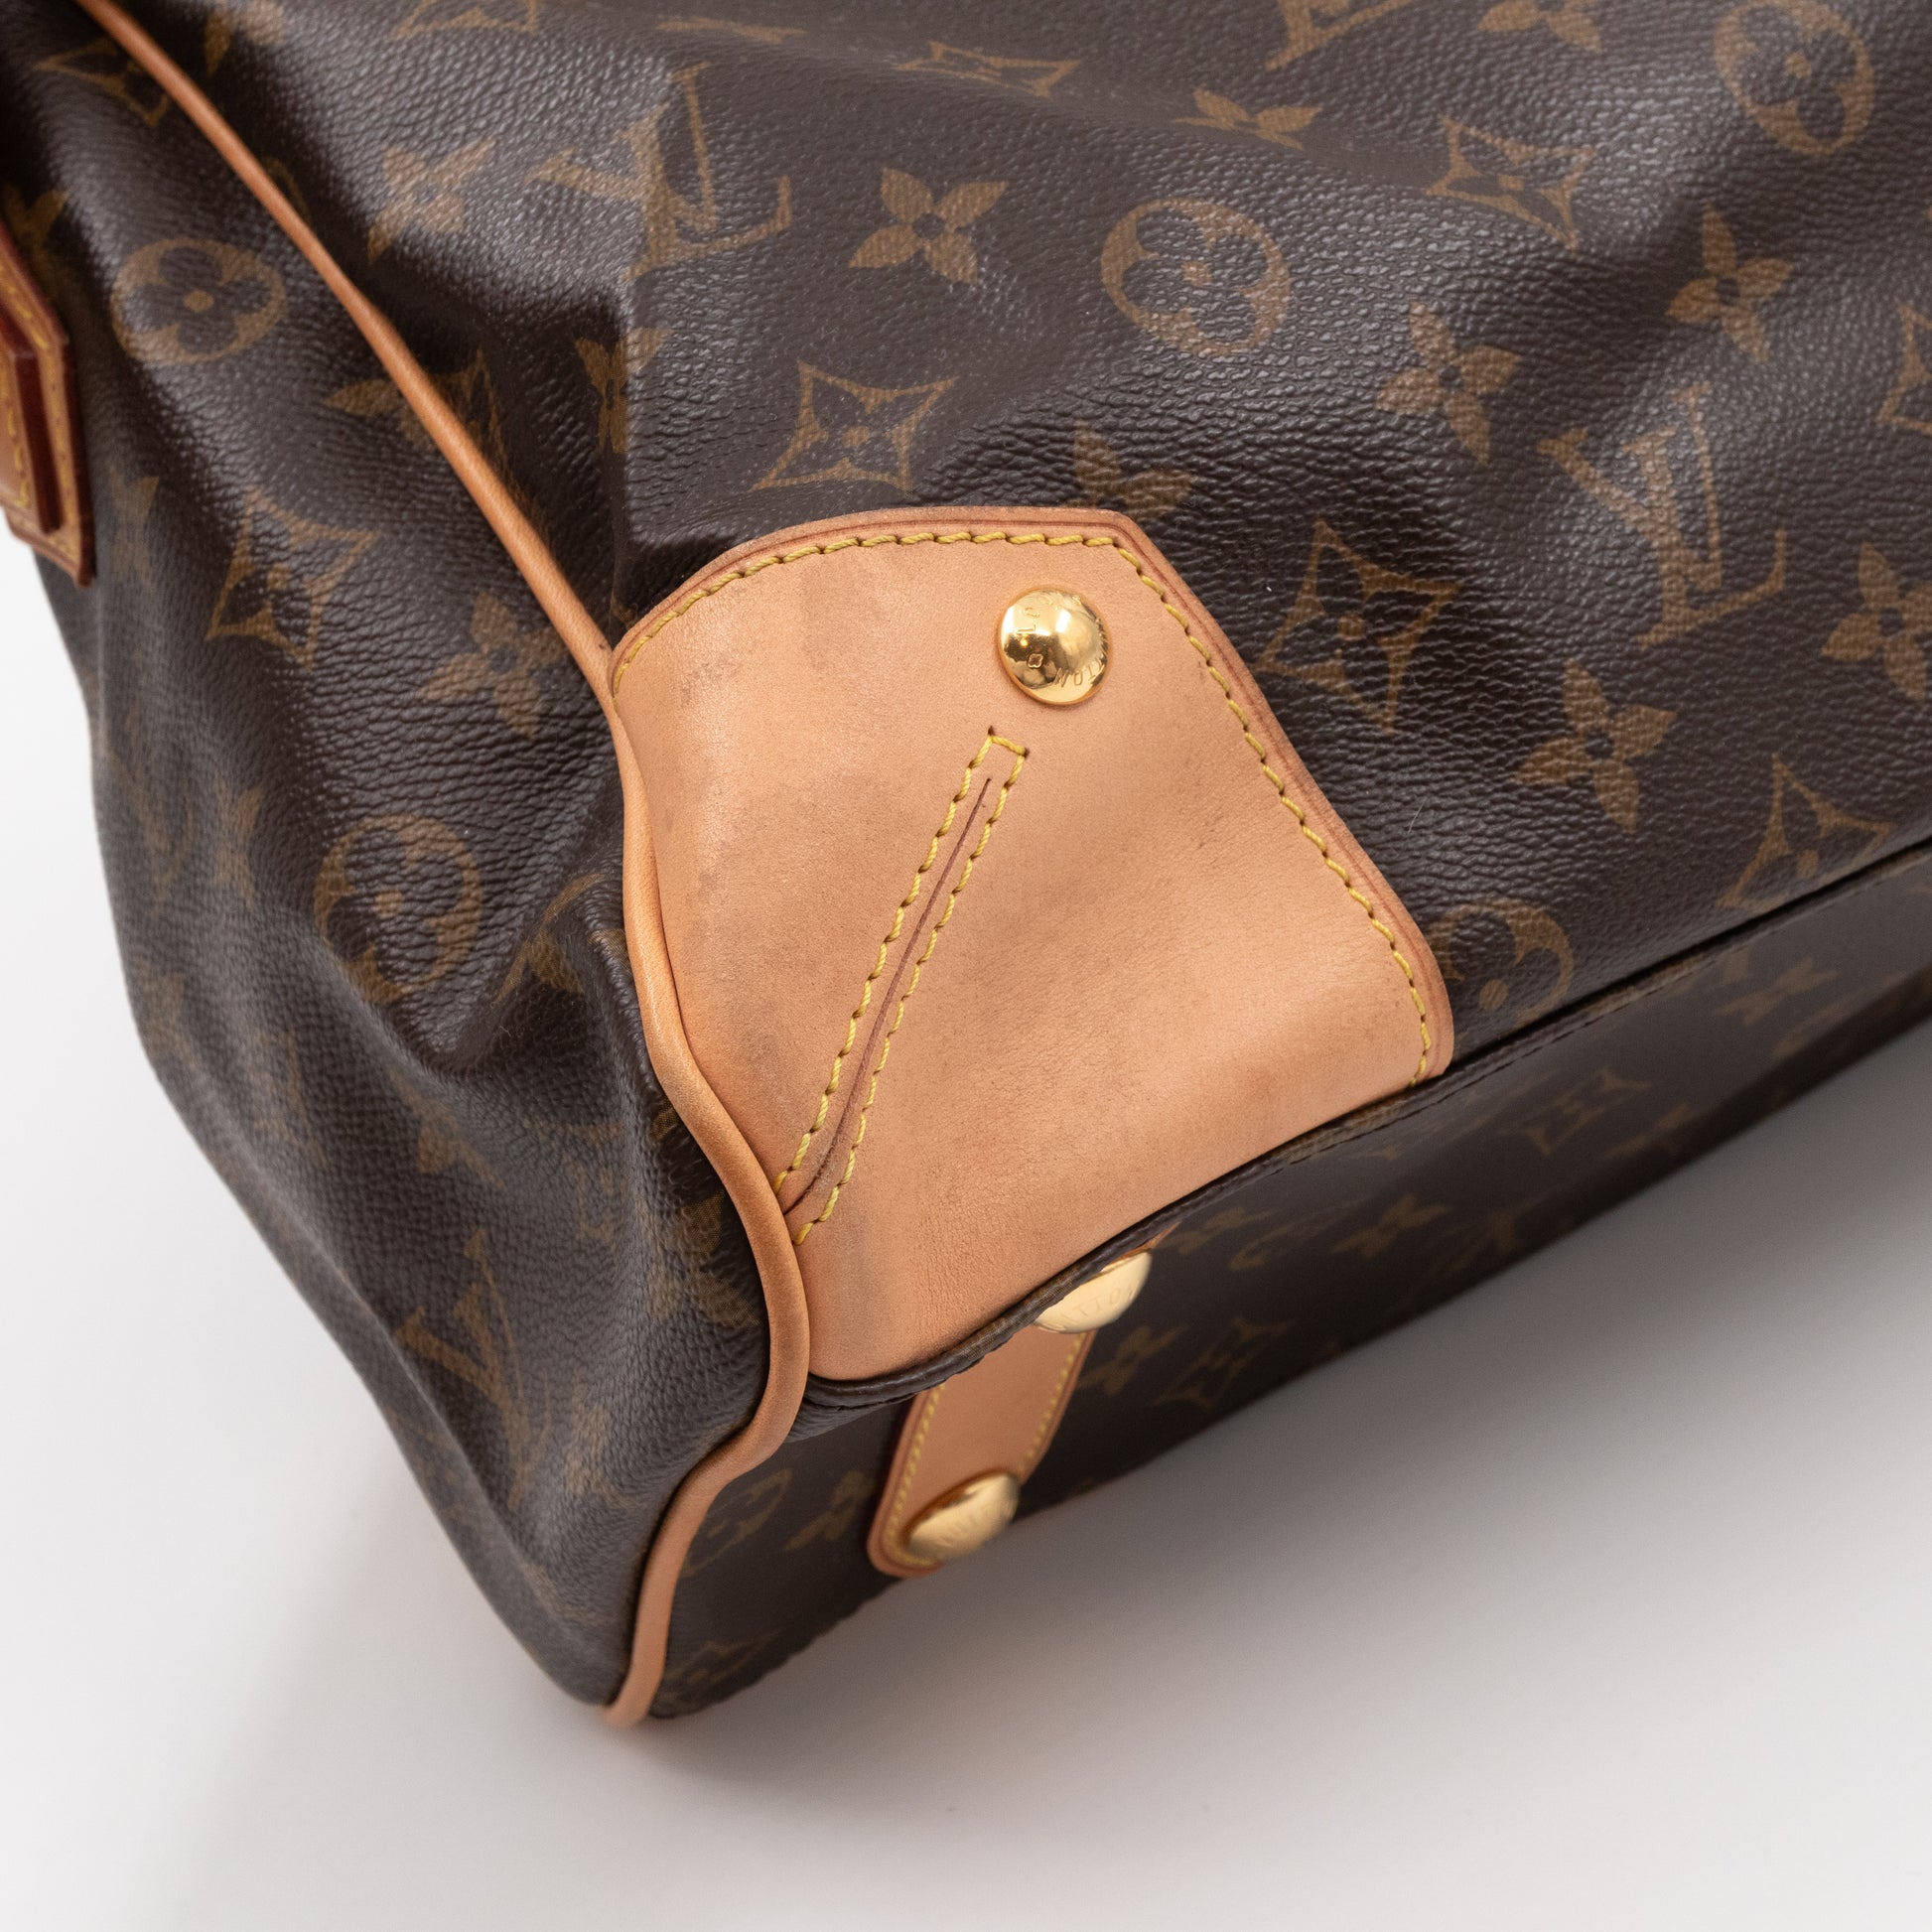 Louis Vuitton Retiro PM Monogram Canvas Shoulder Bag